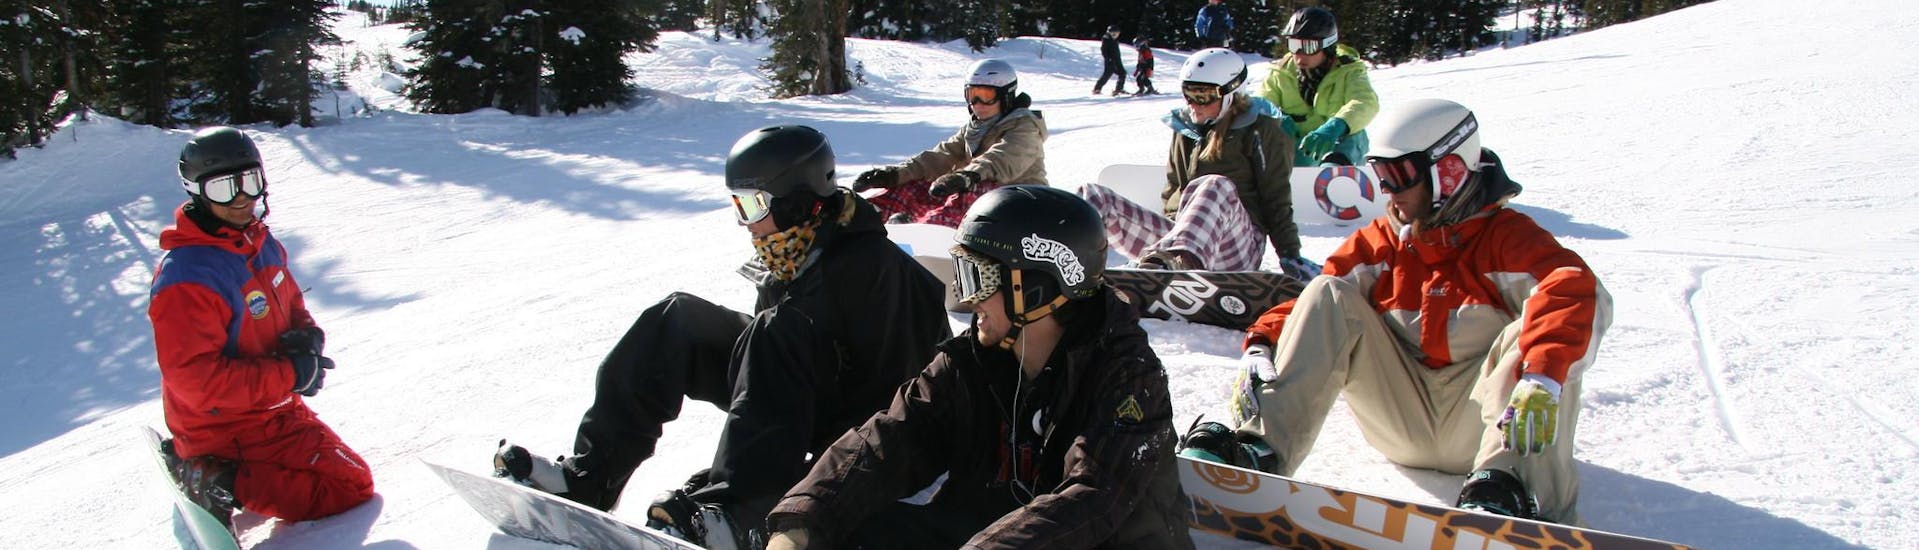 Grupo de snowboarders pasándoselo bien durante una clase de snowboard para principiantes